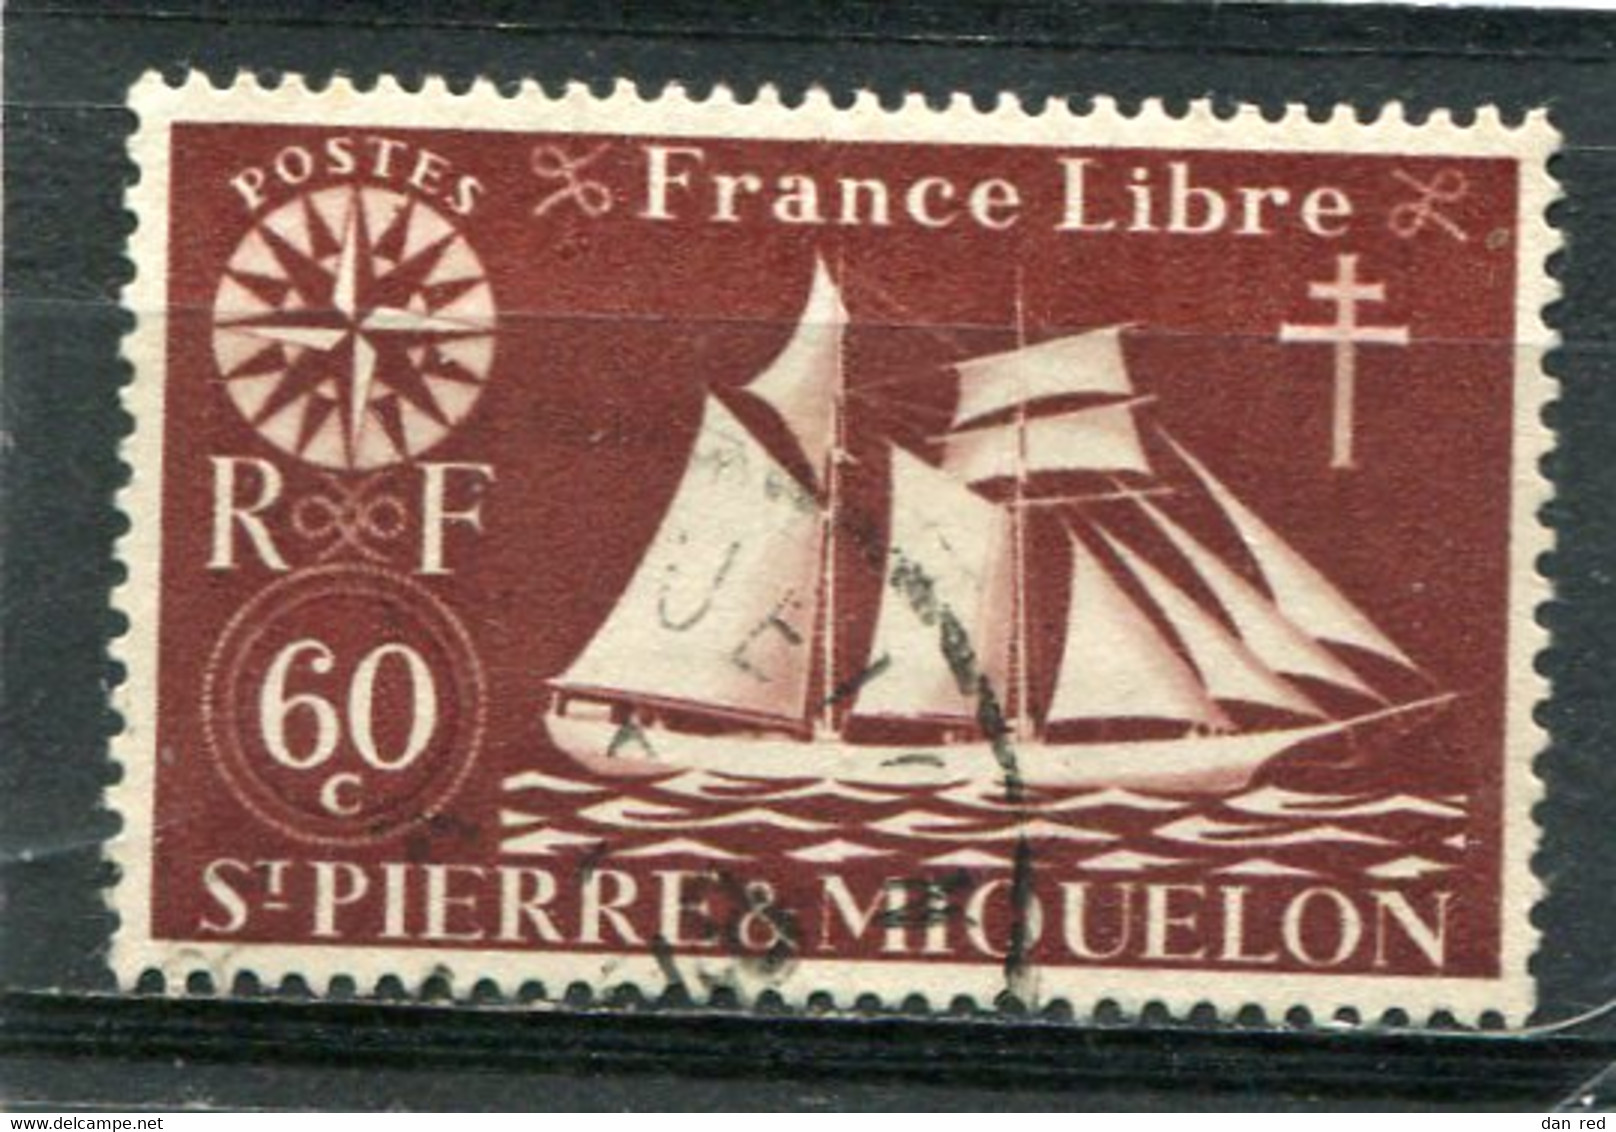 SAINT-PIERRE ET MIQUELON N° 301 (Y&T) (Oblitéré) - Used Stamps